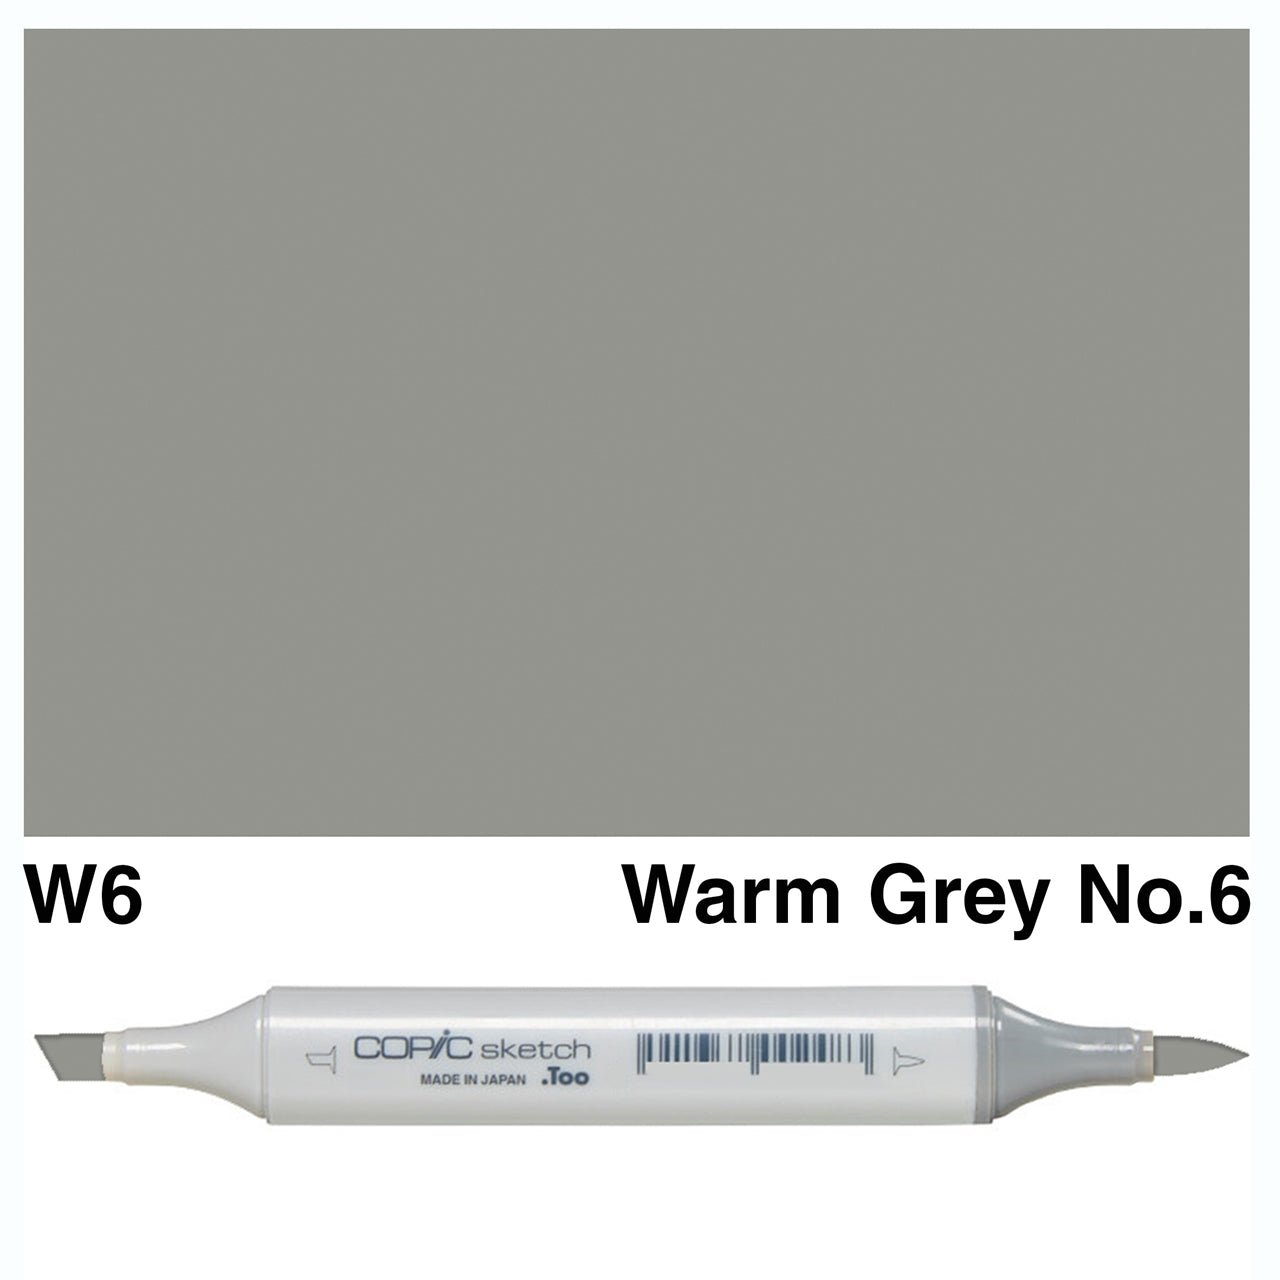 Copic Sketch W6 Warm Gray No.6 - theartshop.com.au